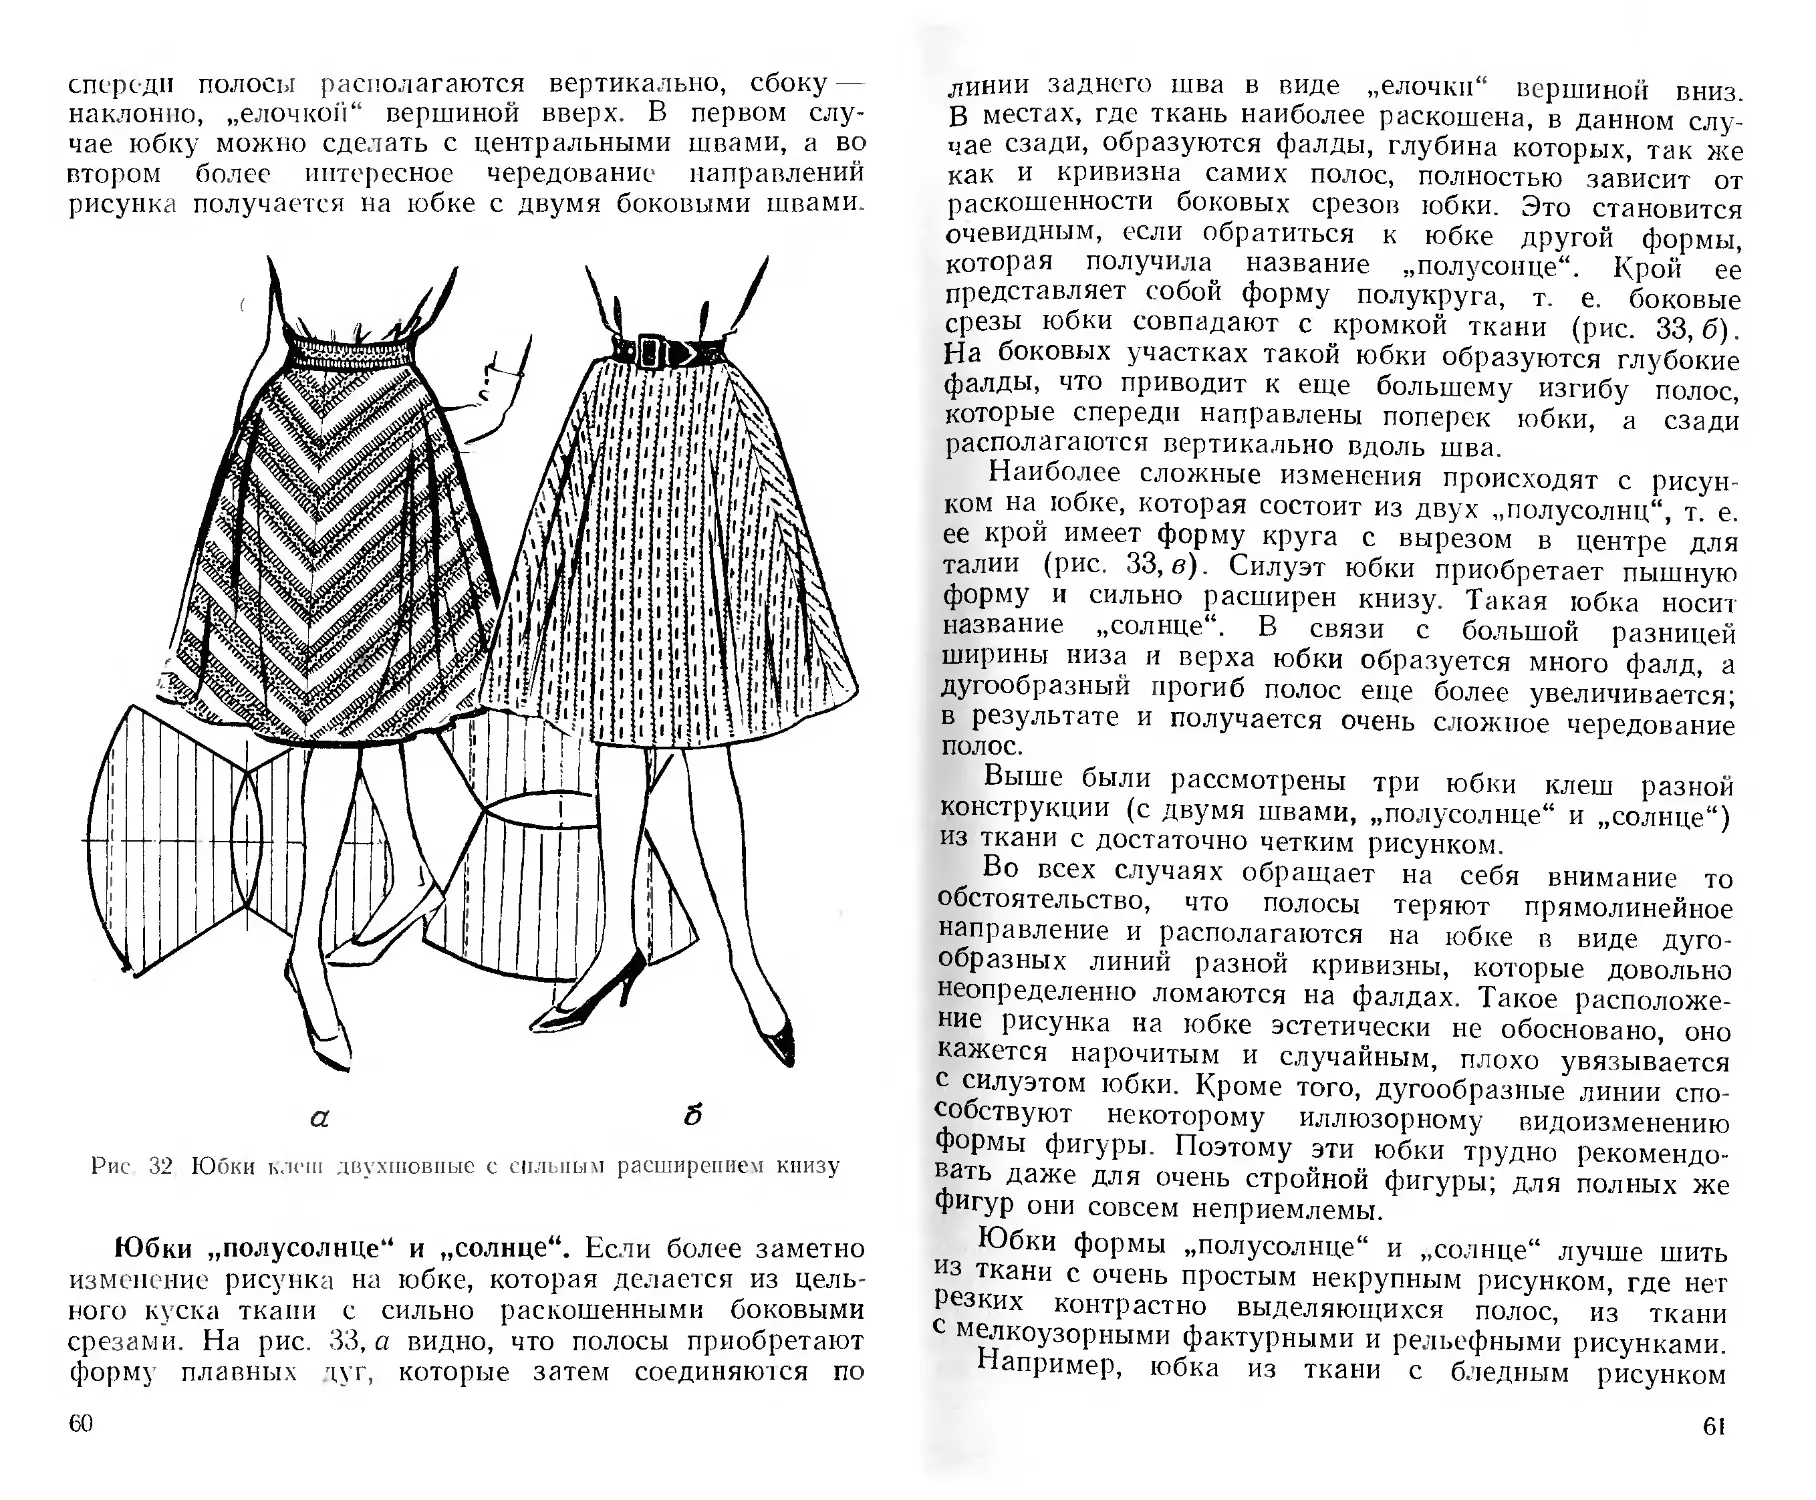 Моделирование женского платья из ткани в полоску Козлов